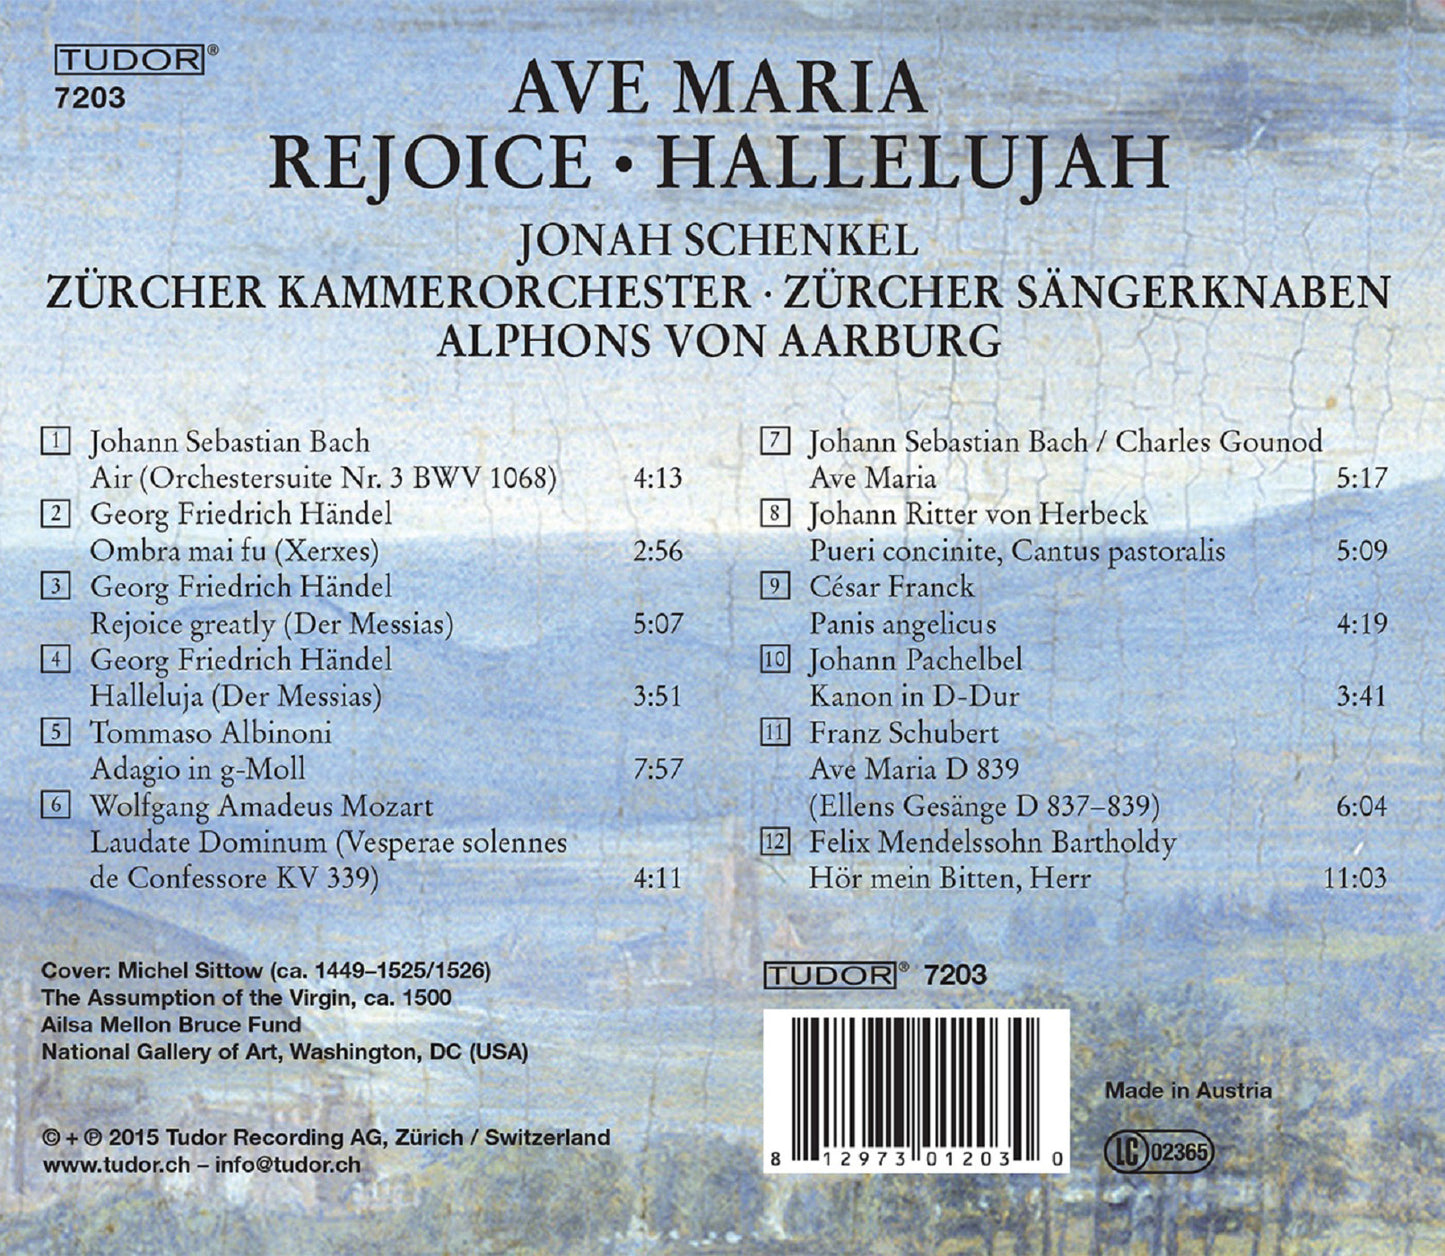 Ave Maria, Rejoice & Hallelujah  Schenkel, Zurich Chamber Orchestra, Zurich Boys Choir, Aarburg